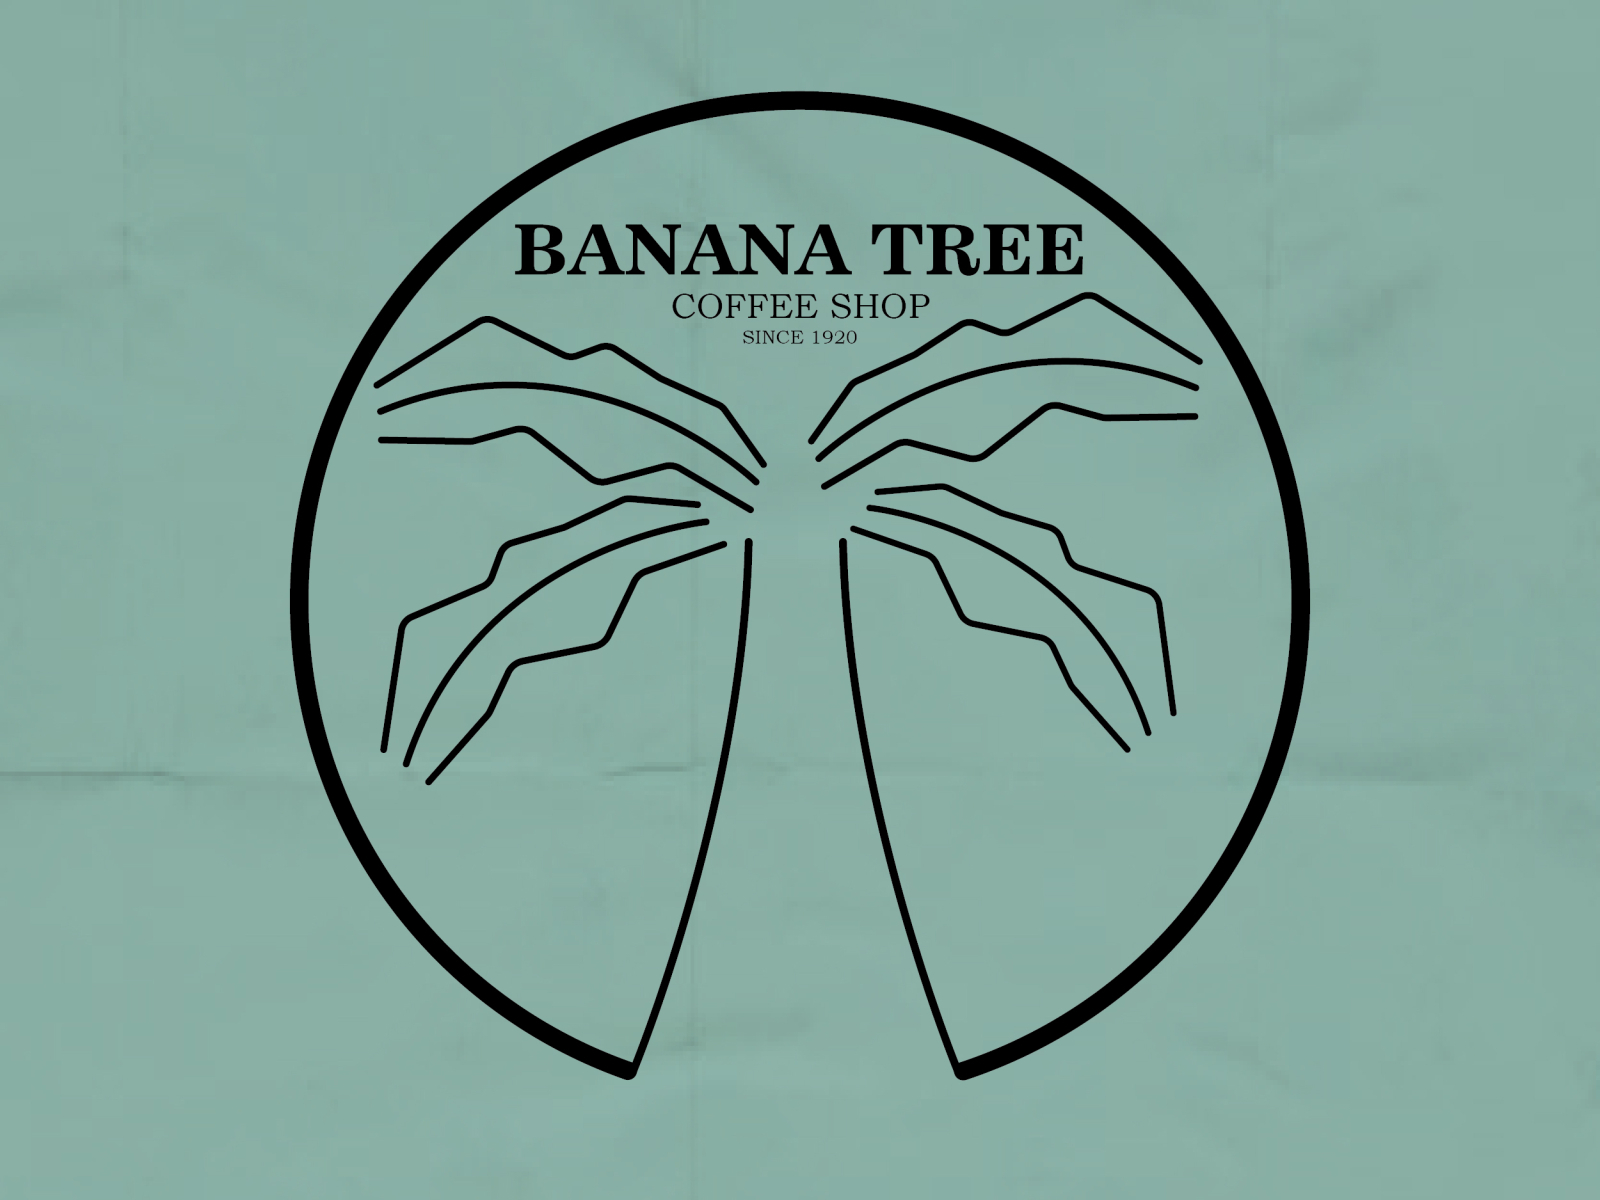 Banana Tree Logo by David Christian on Dribbble